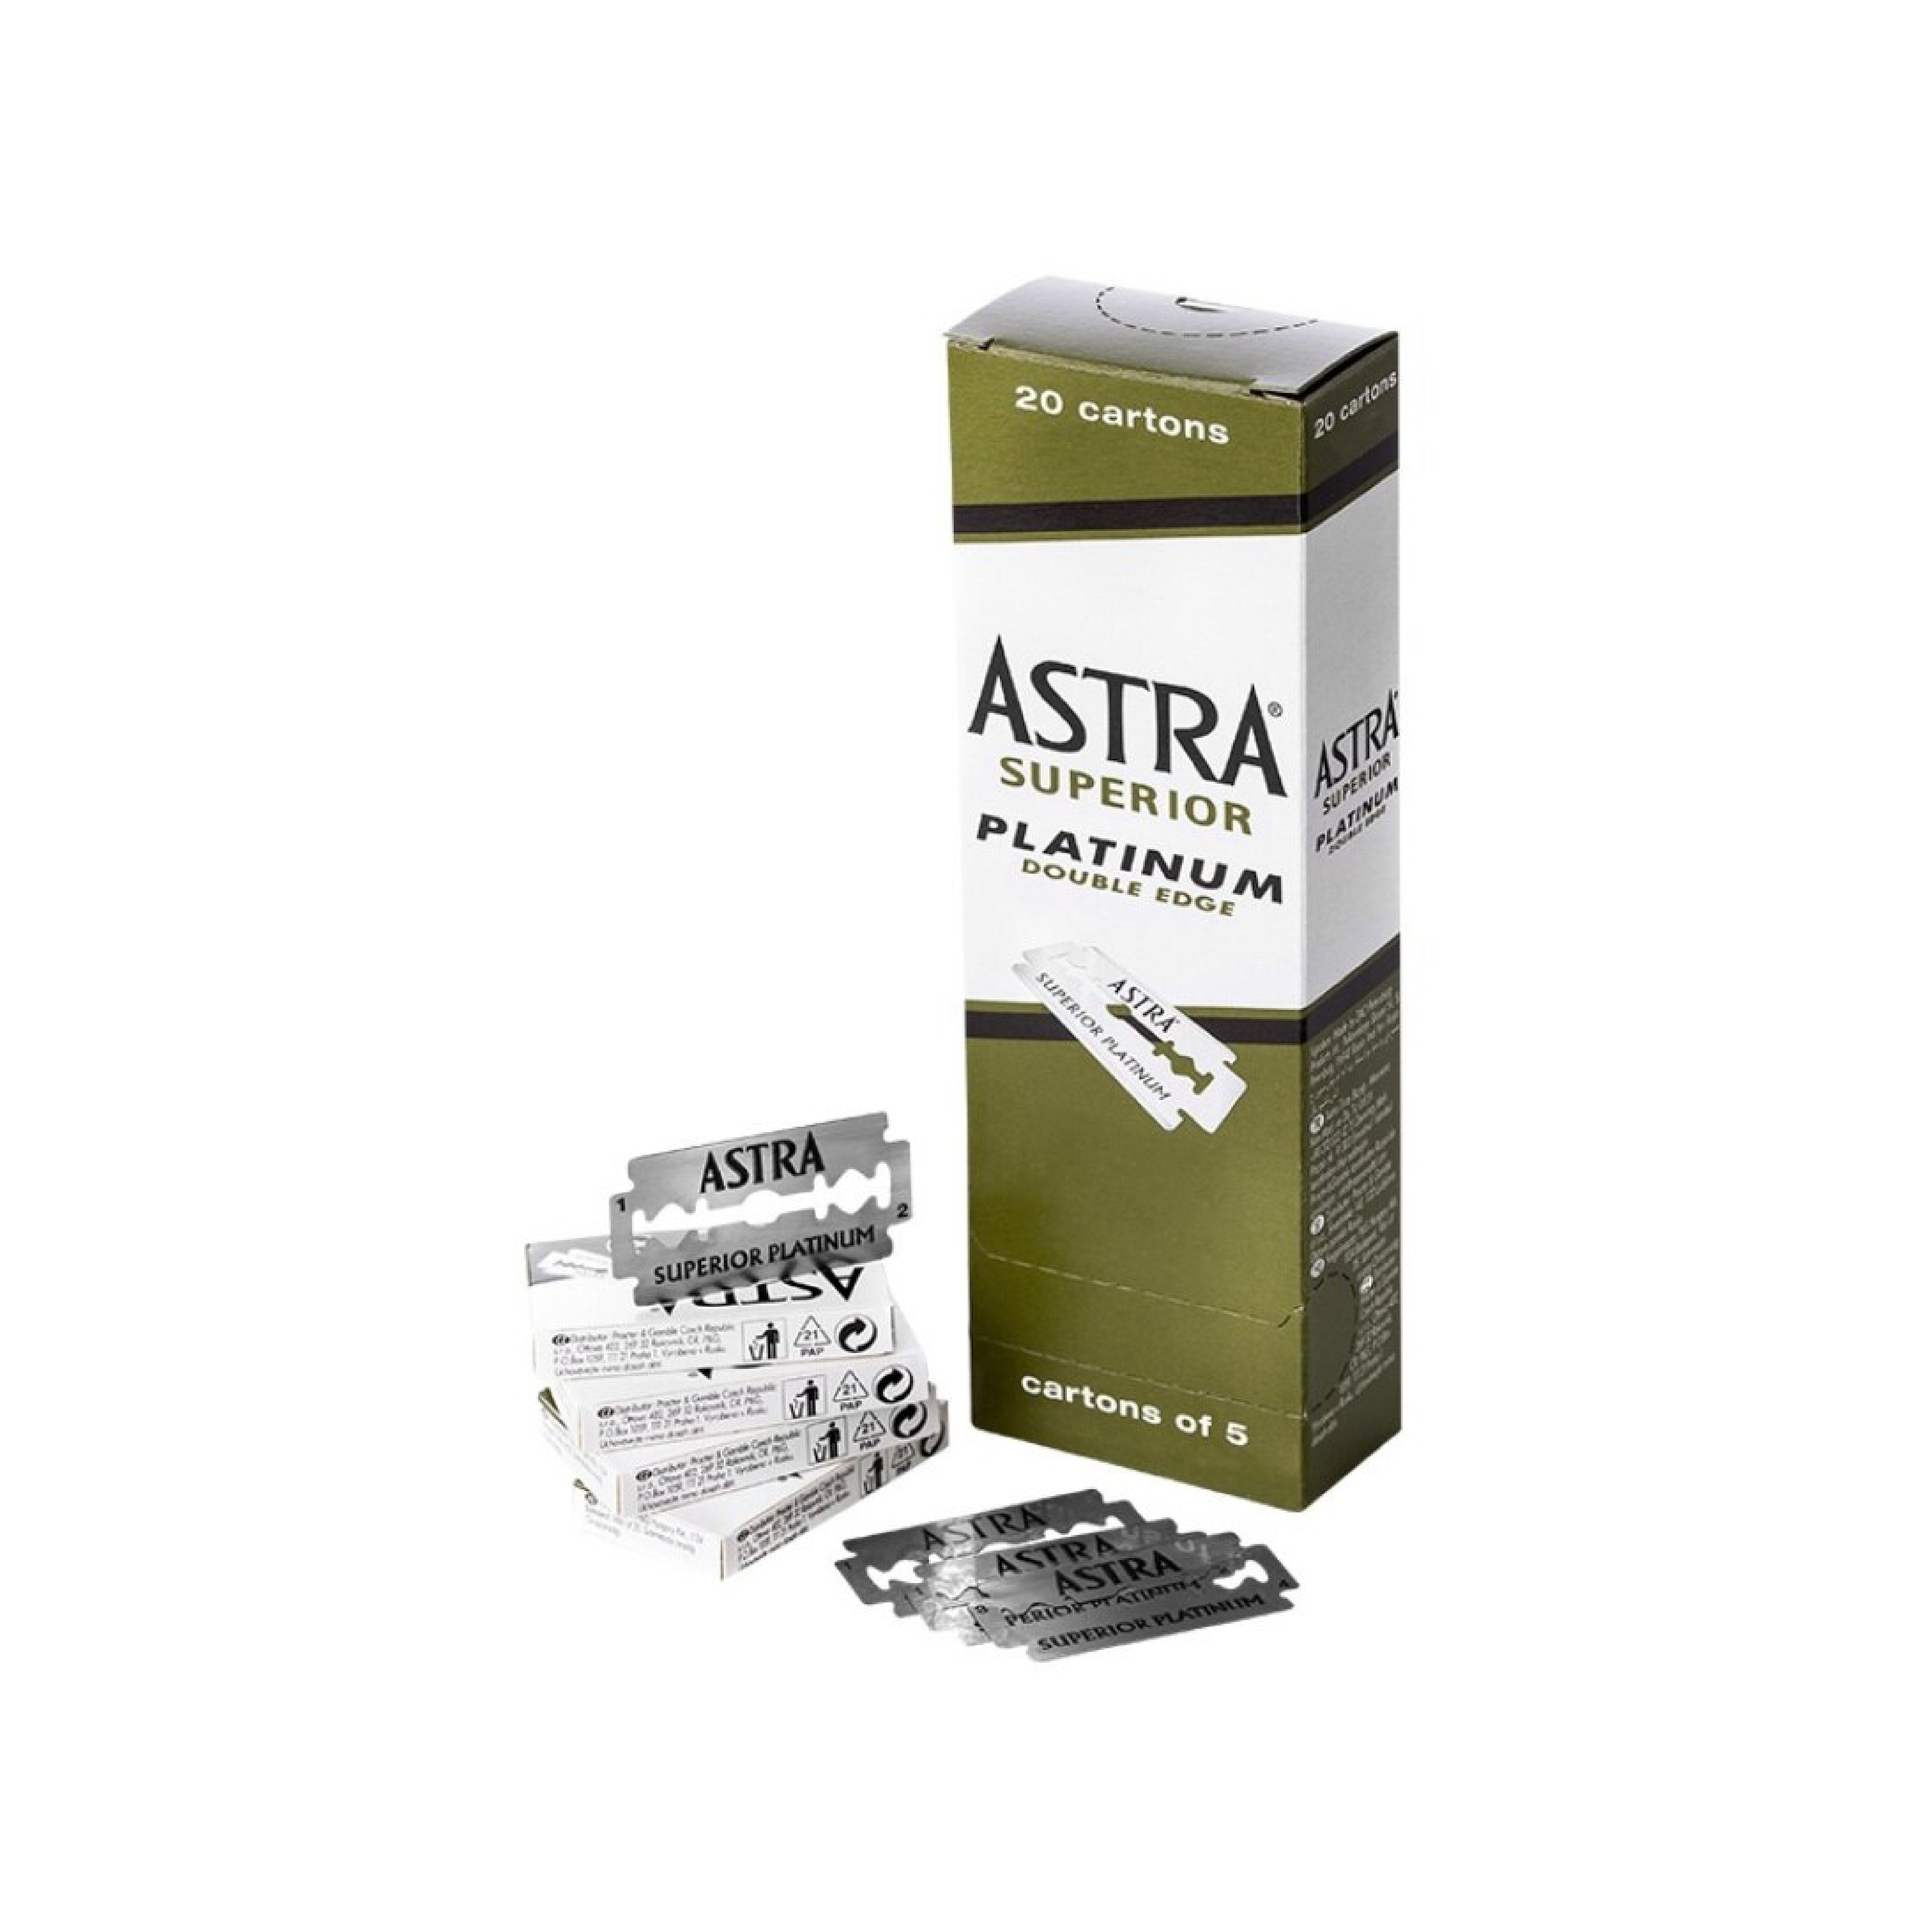 Astra Superior Platinum Double Edge Razor Blades (100) - Barber Bazaar